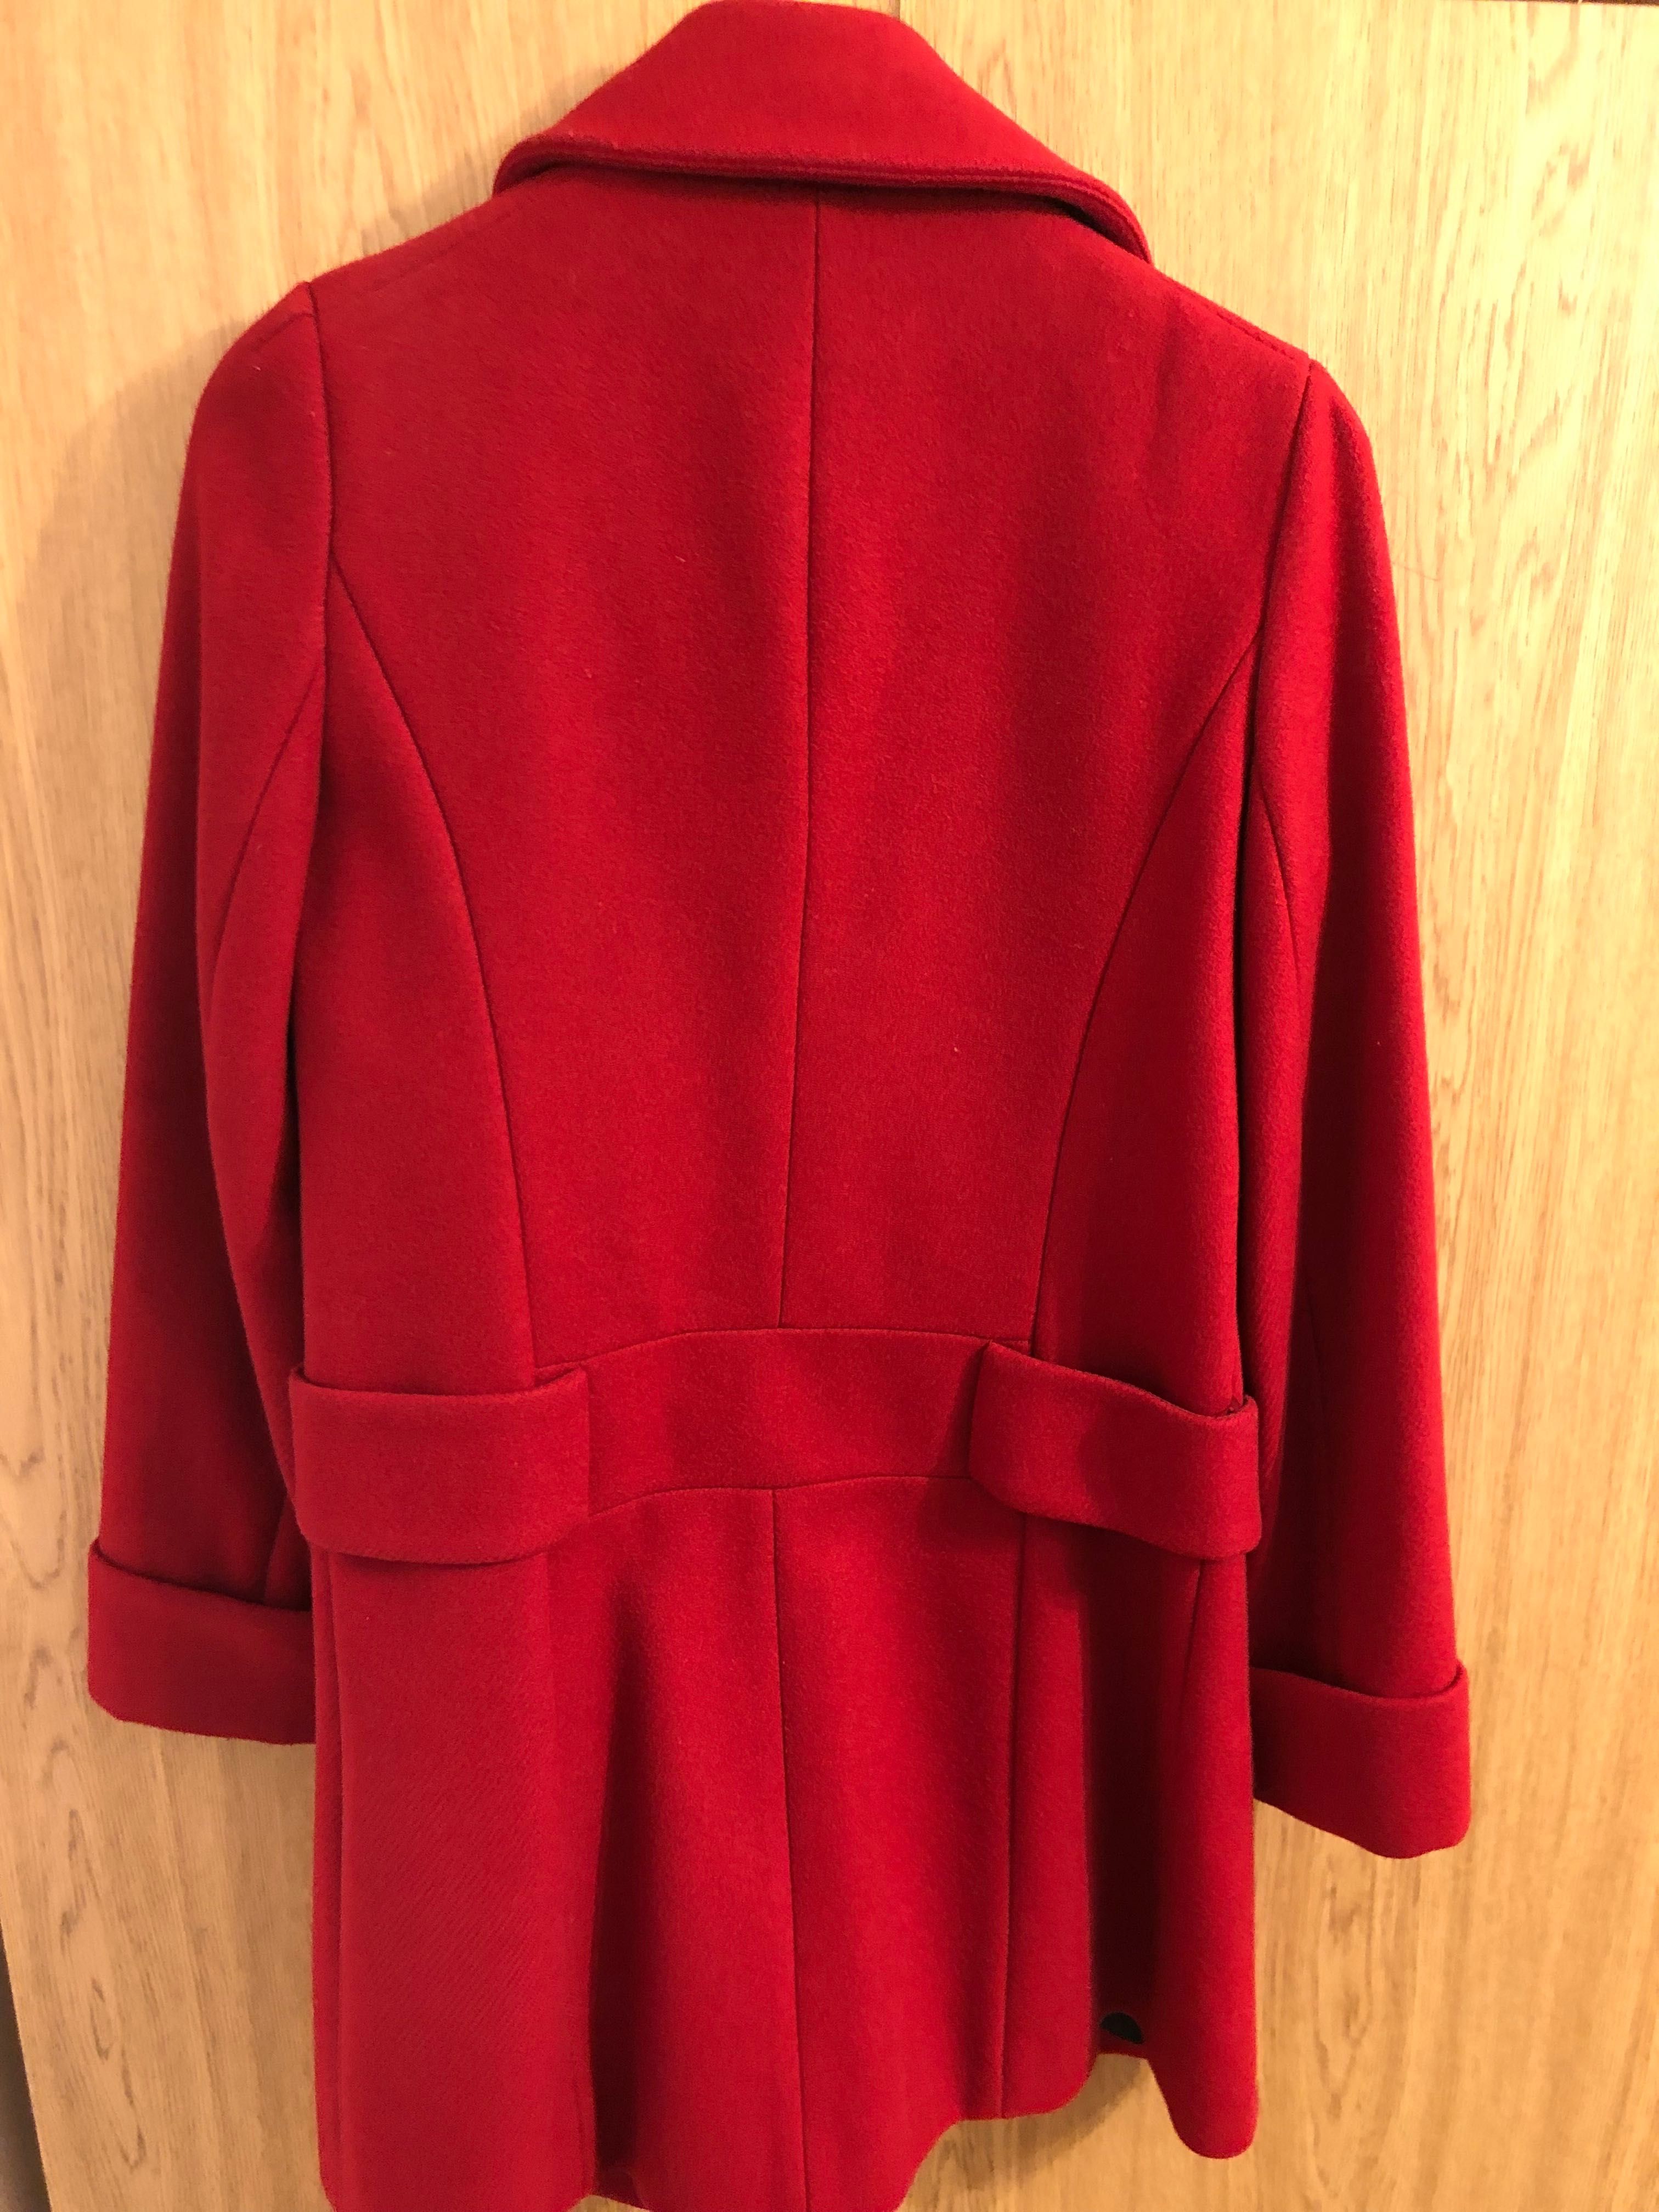 Palton de lana dama nr 38 elegant